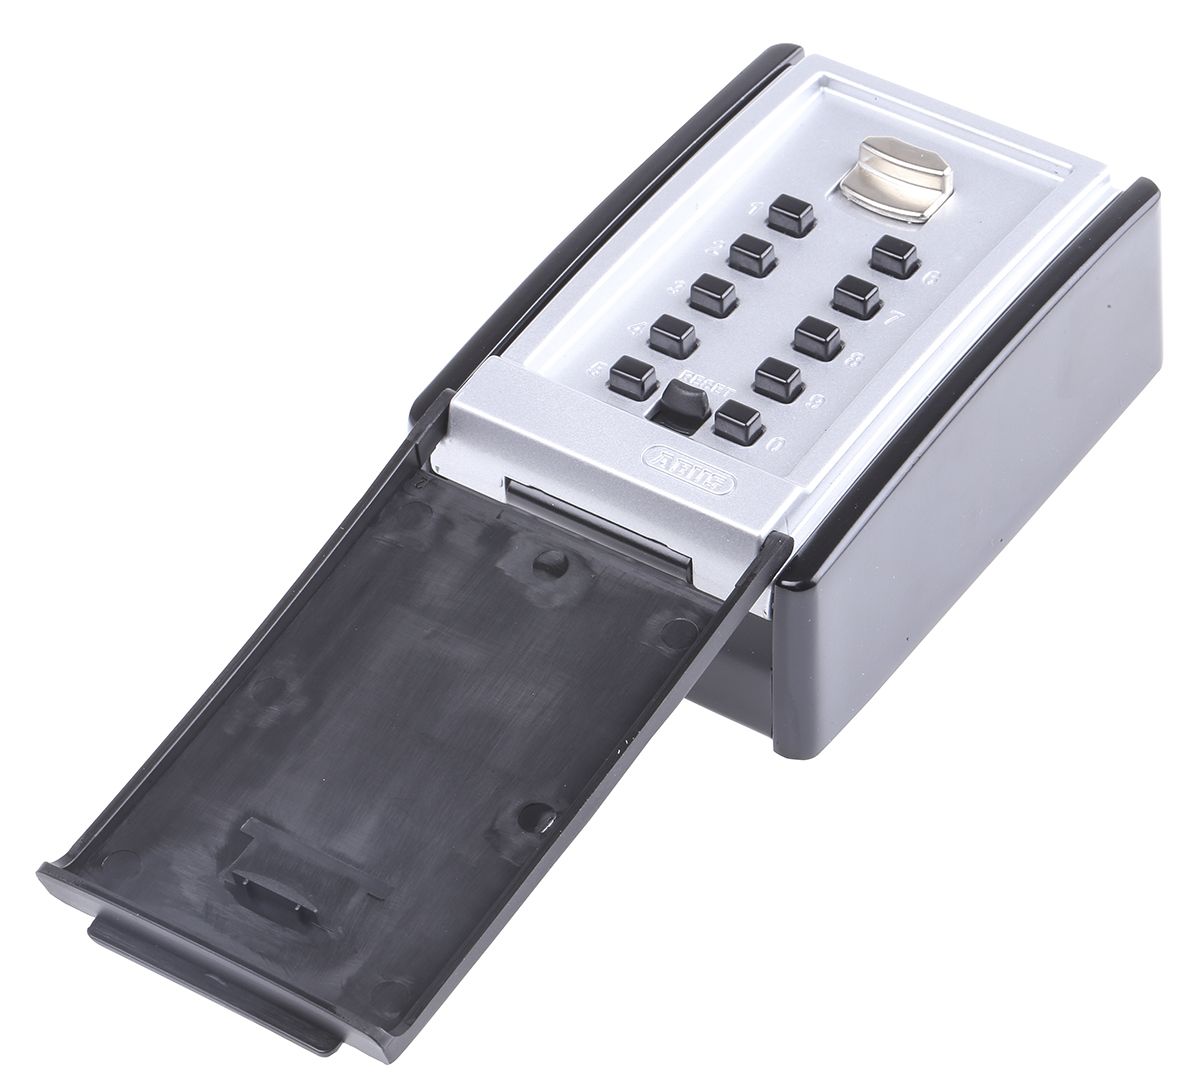 ABUS Schwarz, Silber Zink Schlüsselschrank mit Zahlenschloss für 20 Schlüssel, B 80mm, H 45 mm, Wandmontage